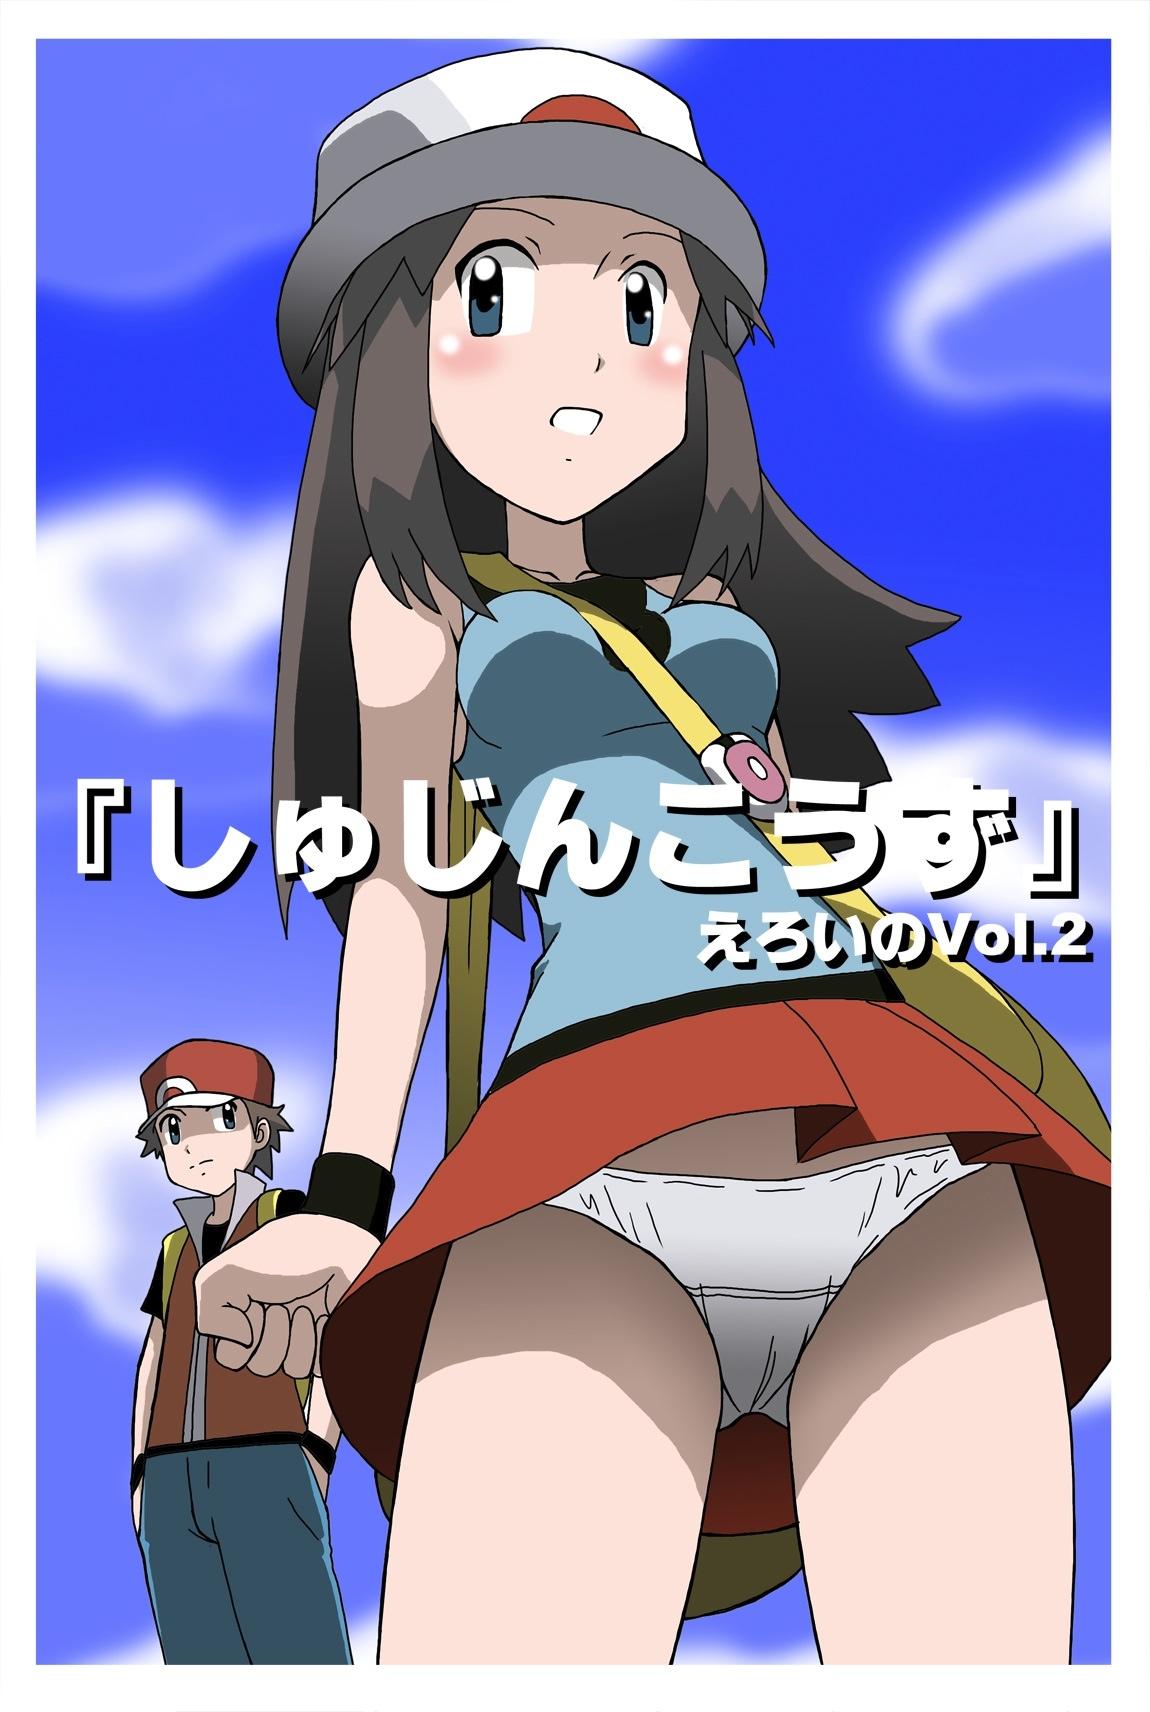 [Kakkii Dou] Shujinkouzu - Eroi no Vol. 2 | Protagonists - Erotic Vol. 2 (Pokemon) [English] {Risette} 0